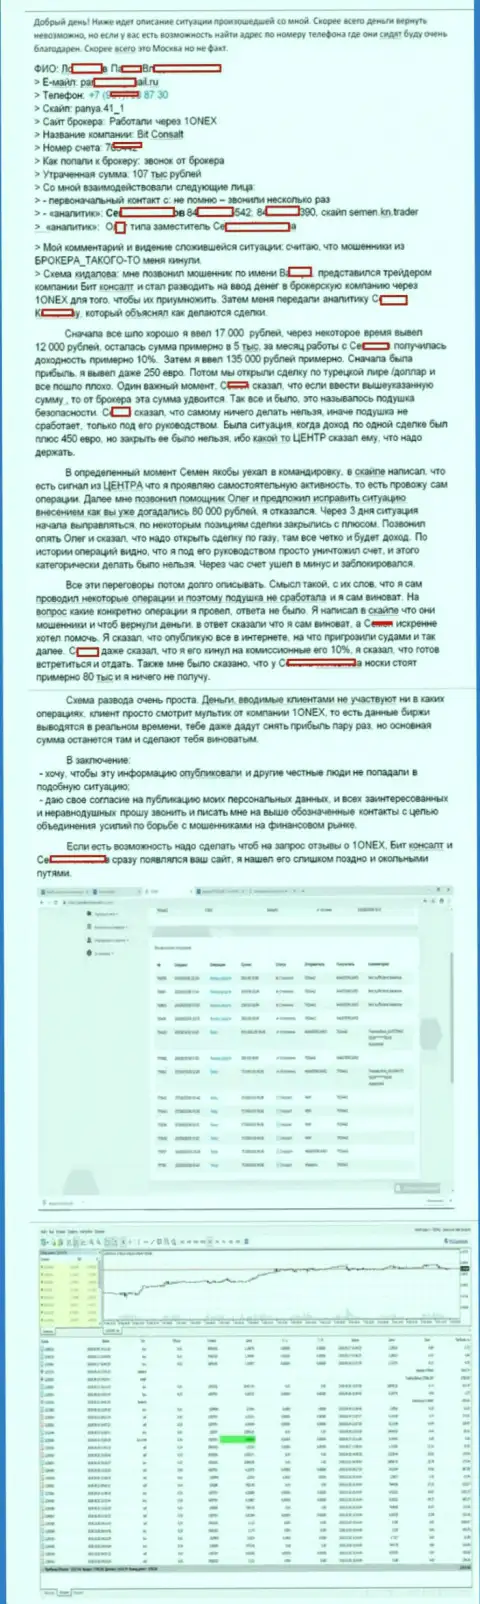 Детальная схема развода валютного трейдера мошенниками из 1Онекс на 107 тыс. рублей